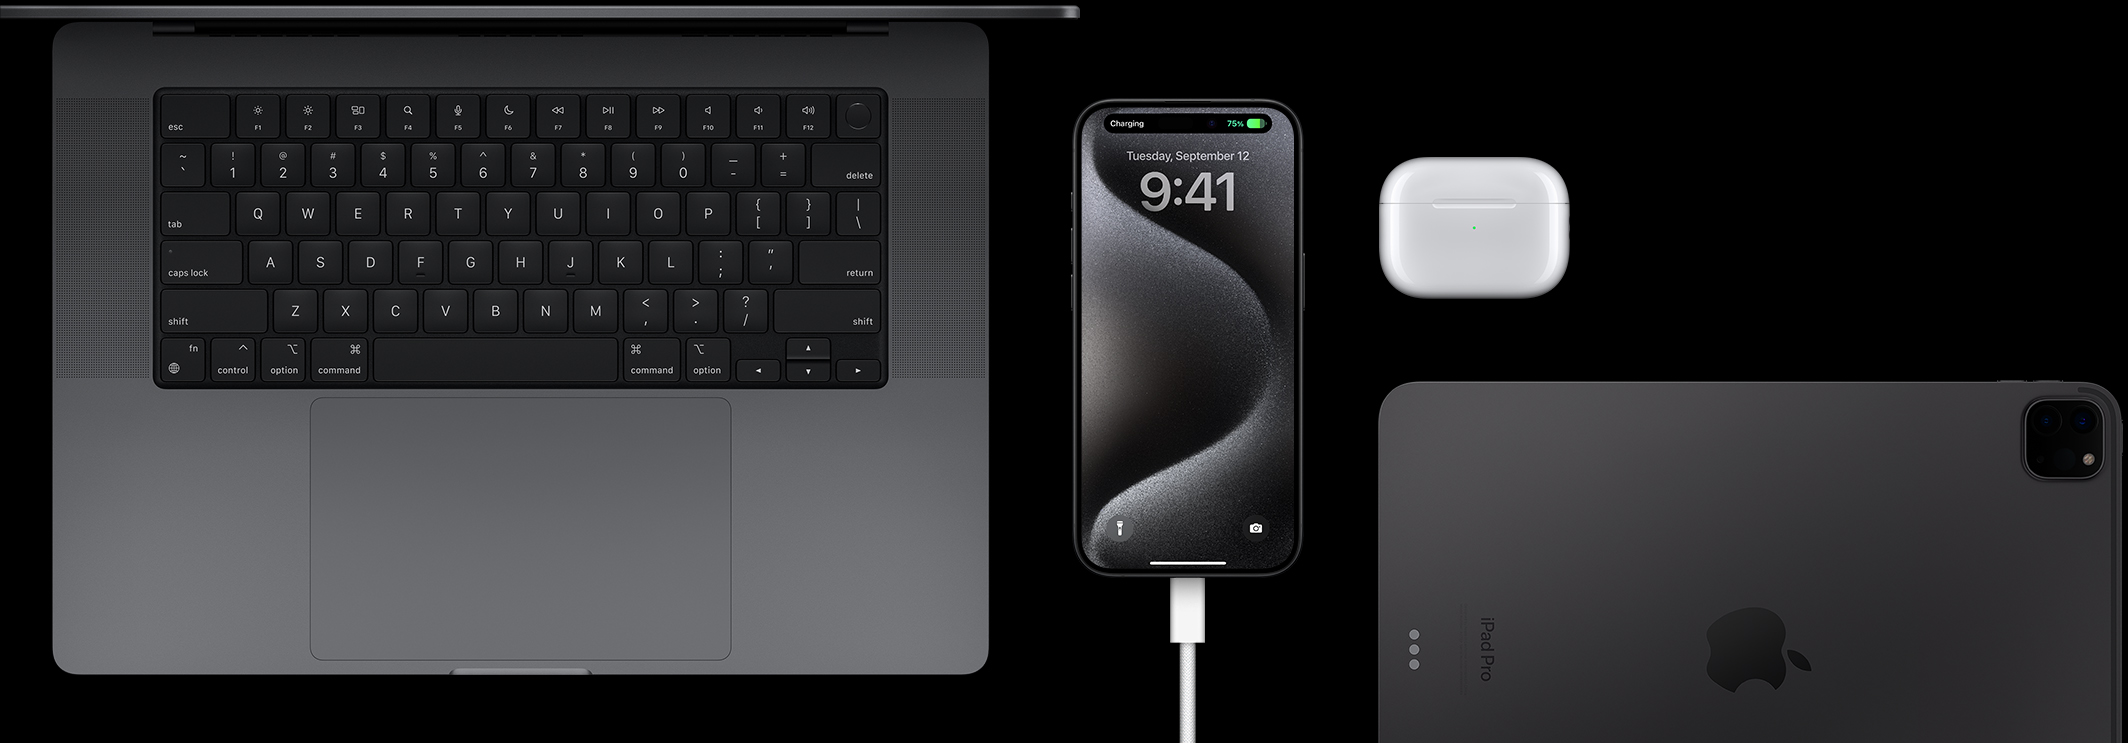 iPhone 15 Pro, amelyhez USB-C kábel van csatlakoztatva, körülötte egy Macbook Pro, egy AirPods Pro és egy iPad